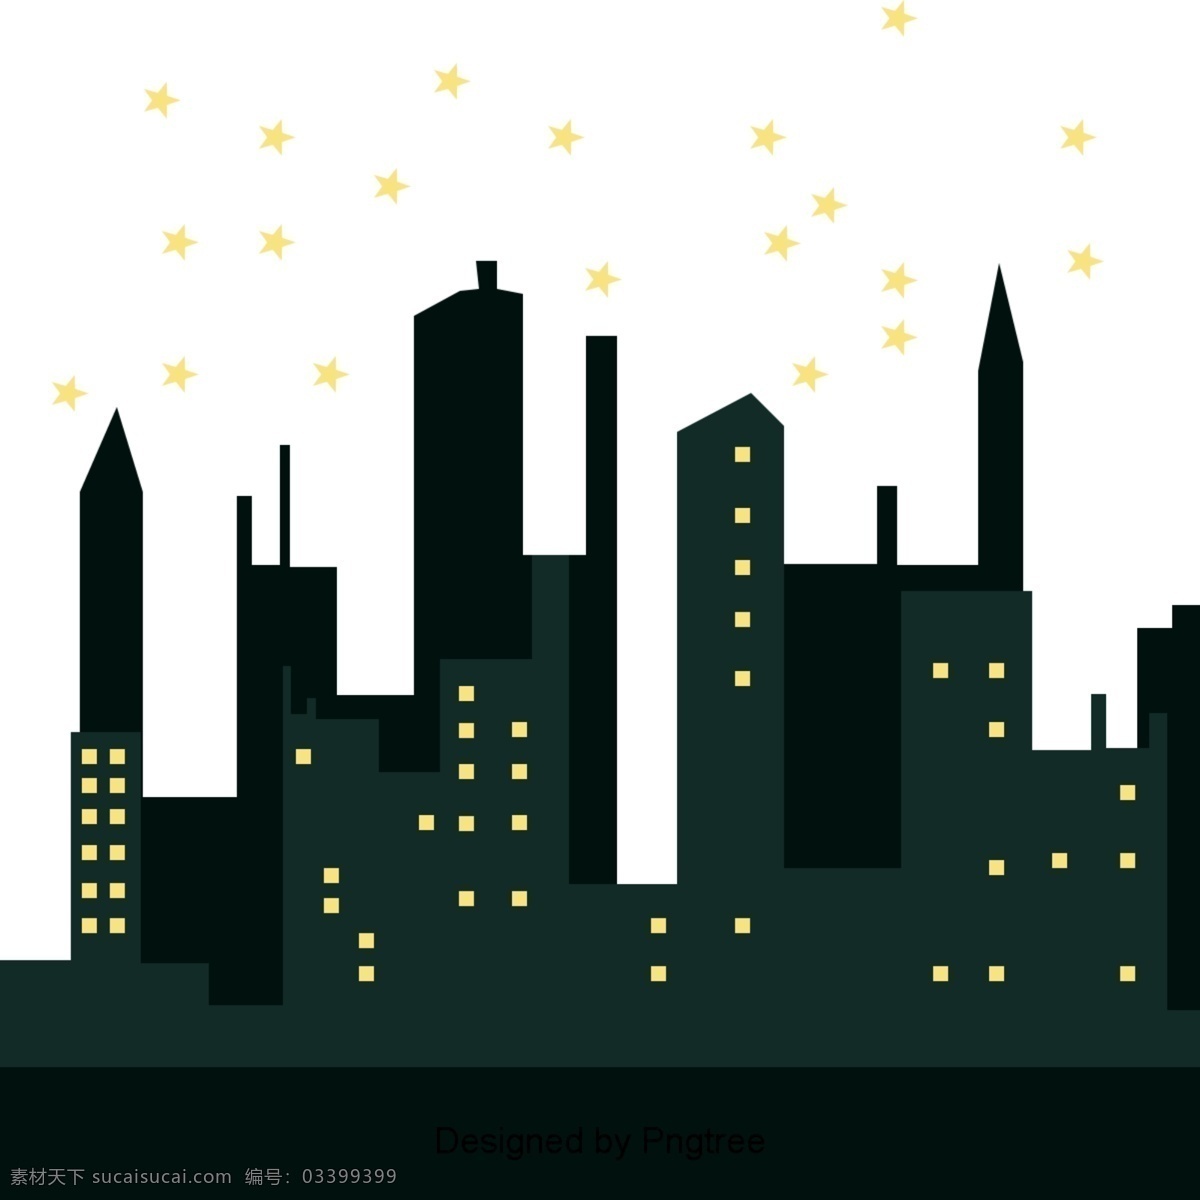 美丽 卡通 可爱 平展 手绘 城市 建筑 环保 漂亮 平手 绘 夜 星星 高